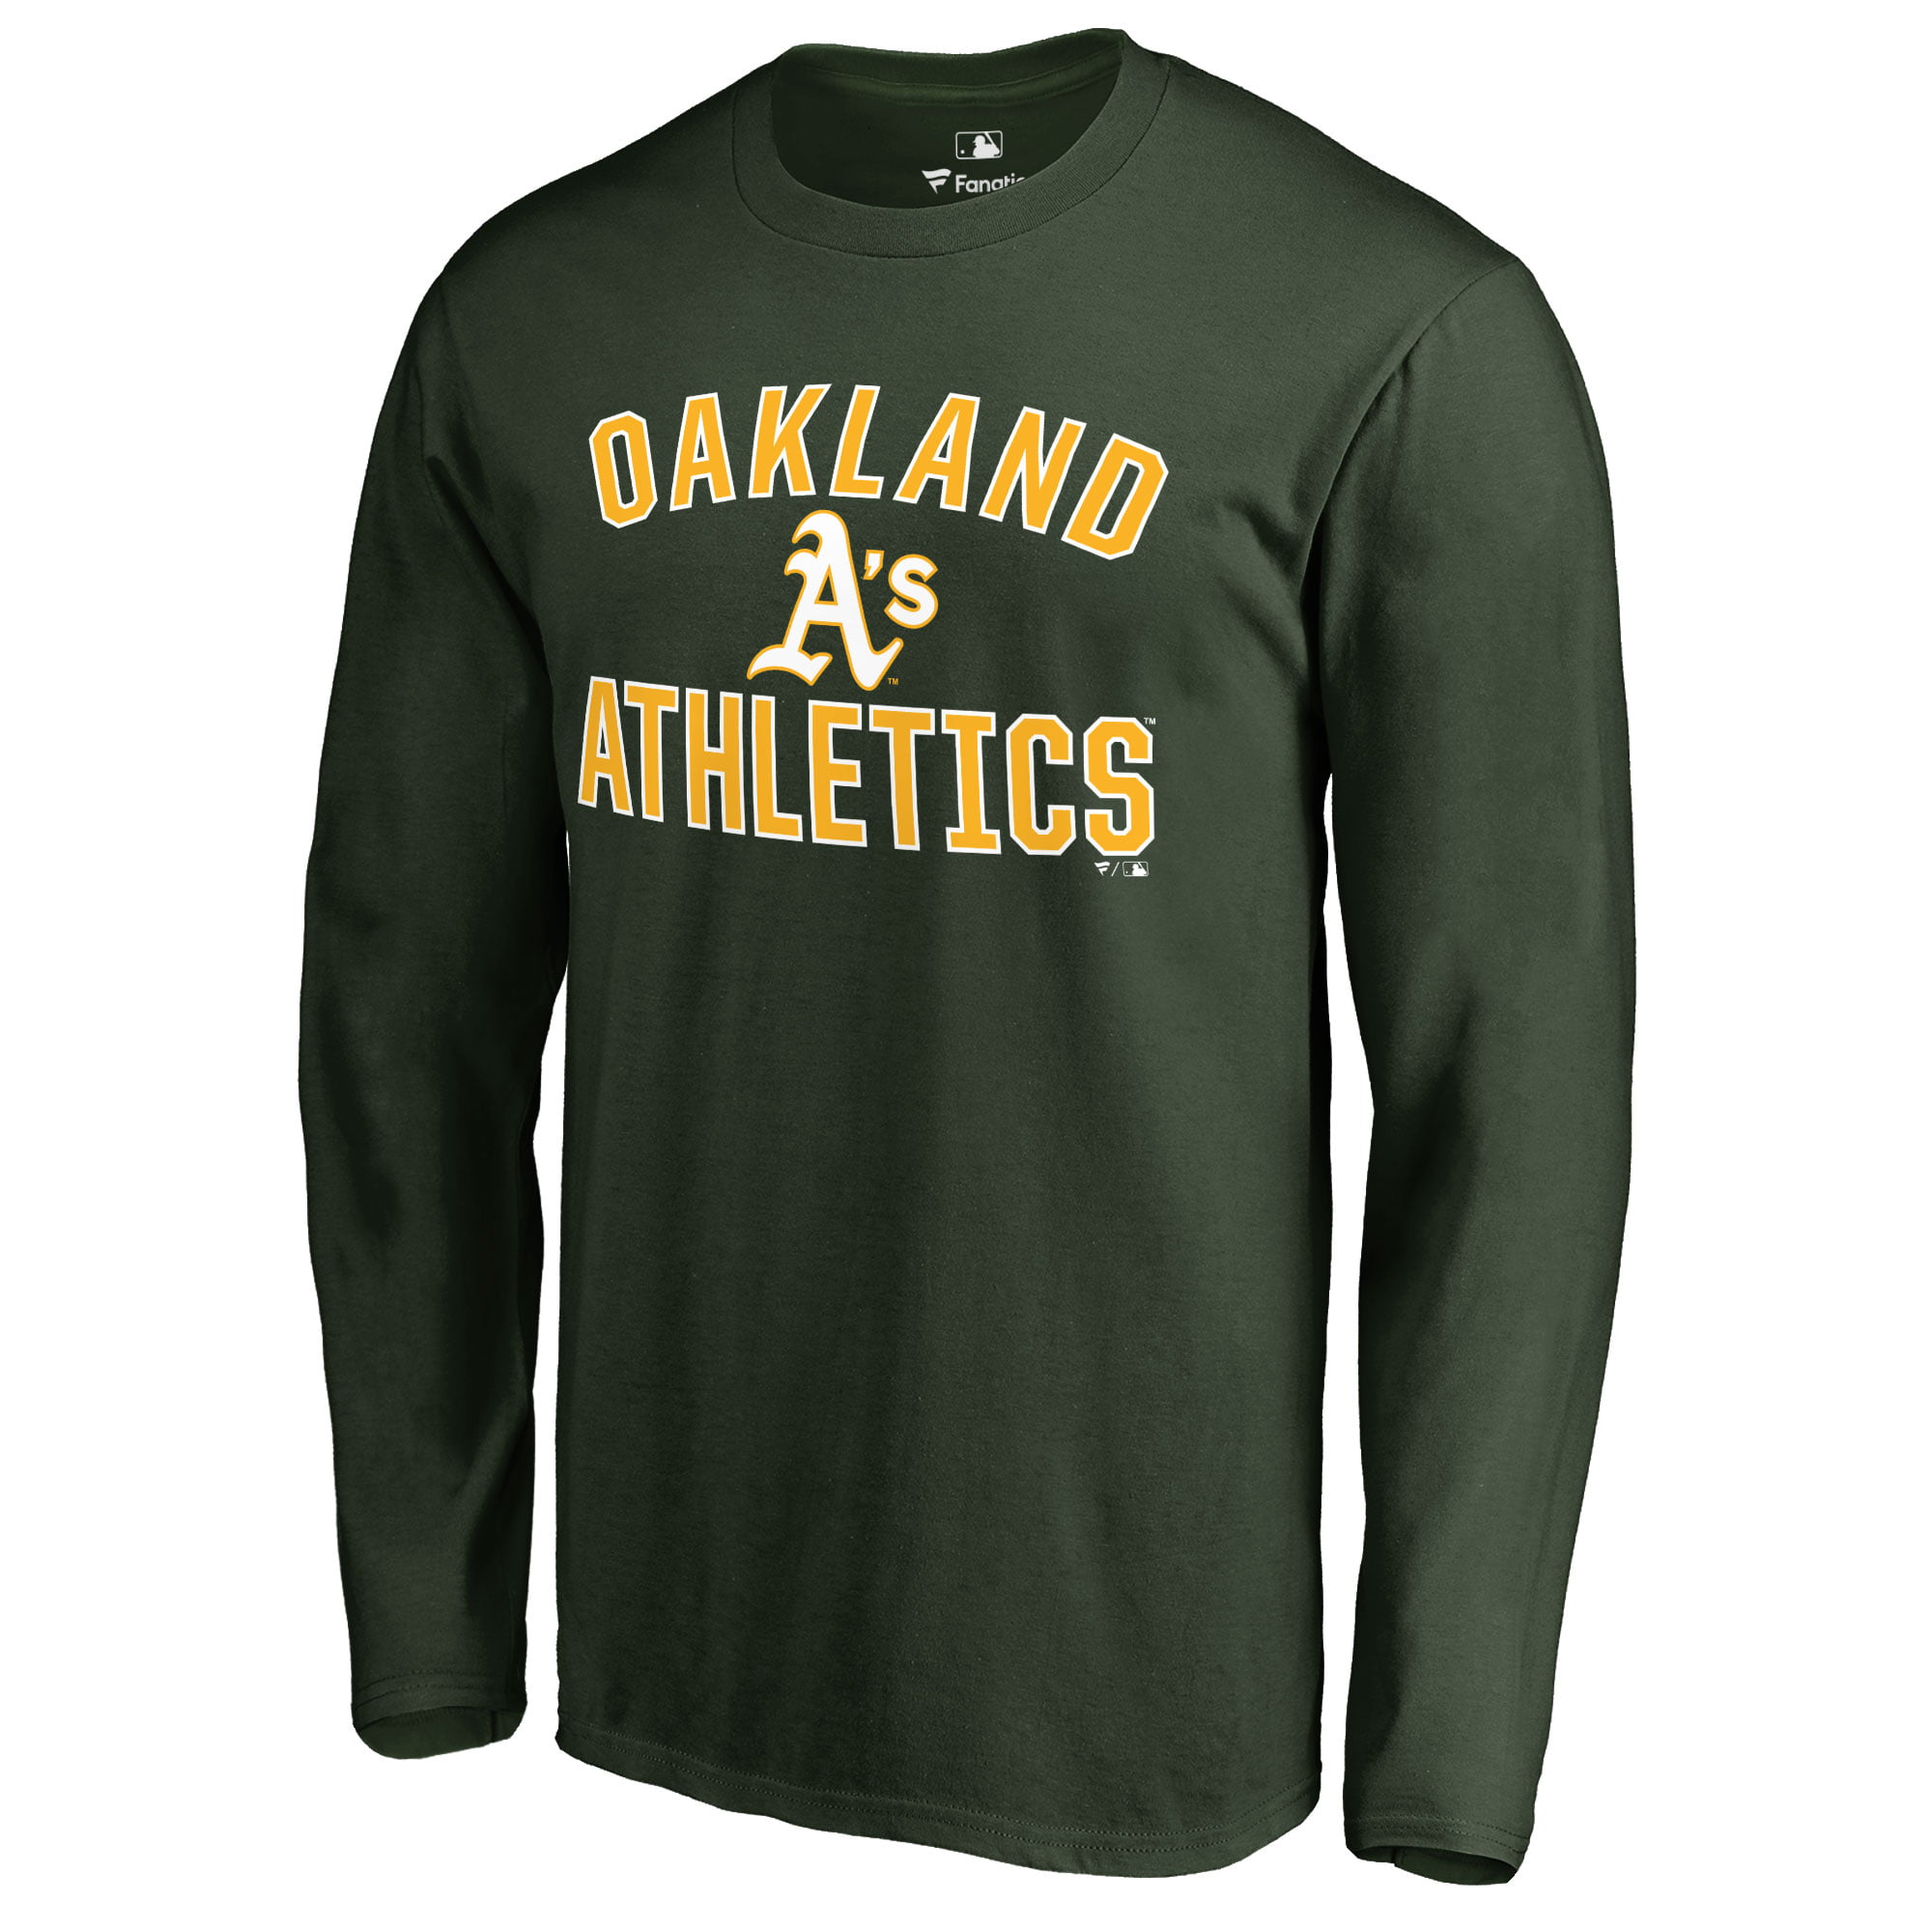 oakland athletics long sleeve shirts